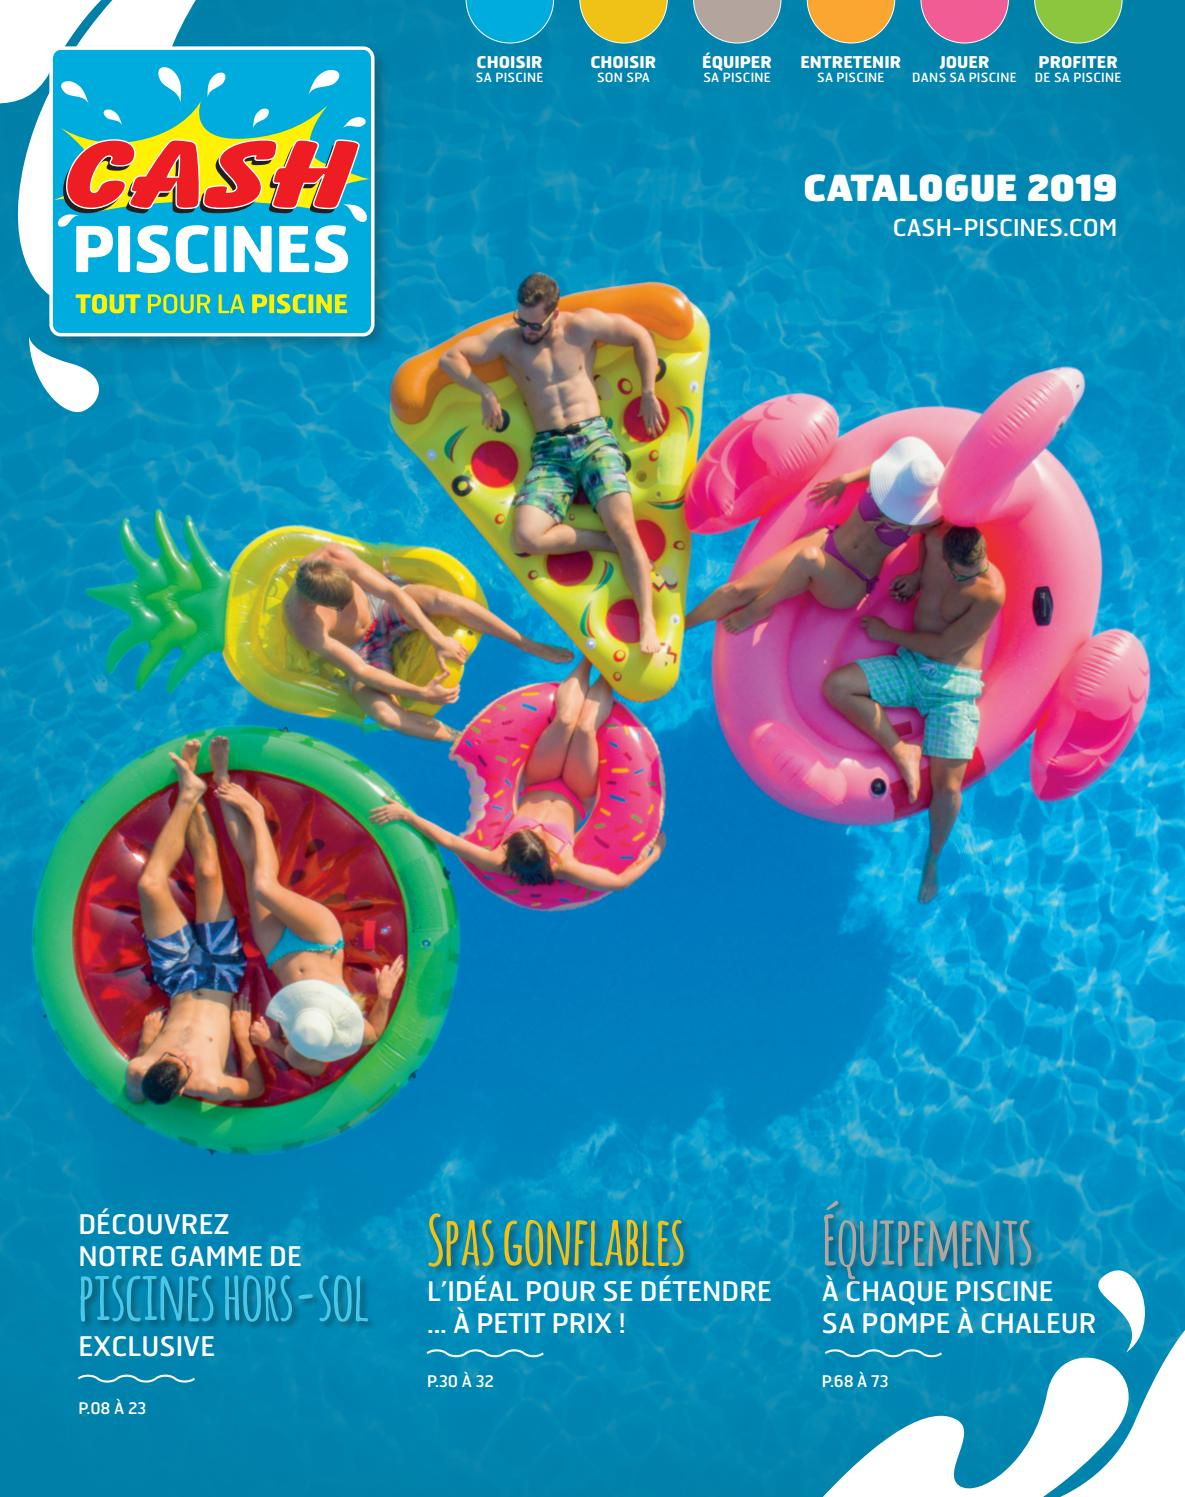 Catalogue Cash Piscines 2019 By Cashpiscines2 - Issuu intérieur Cash Piscine Avignon